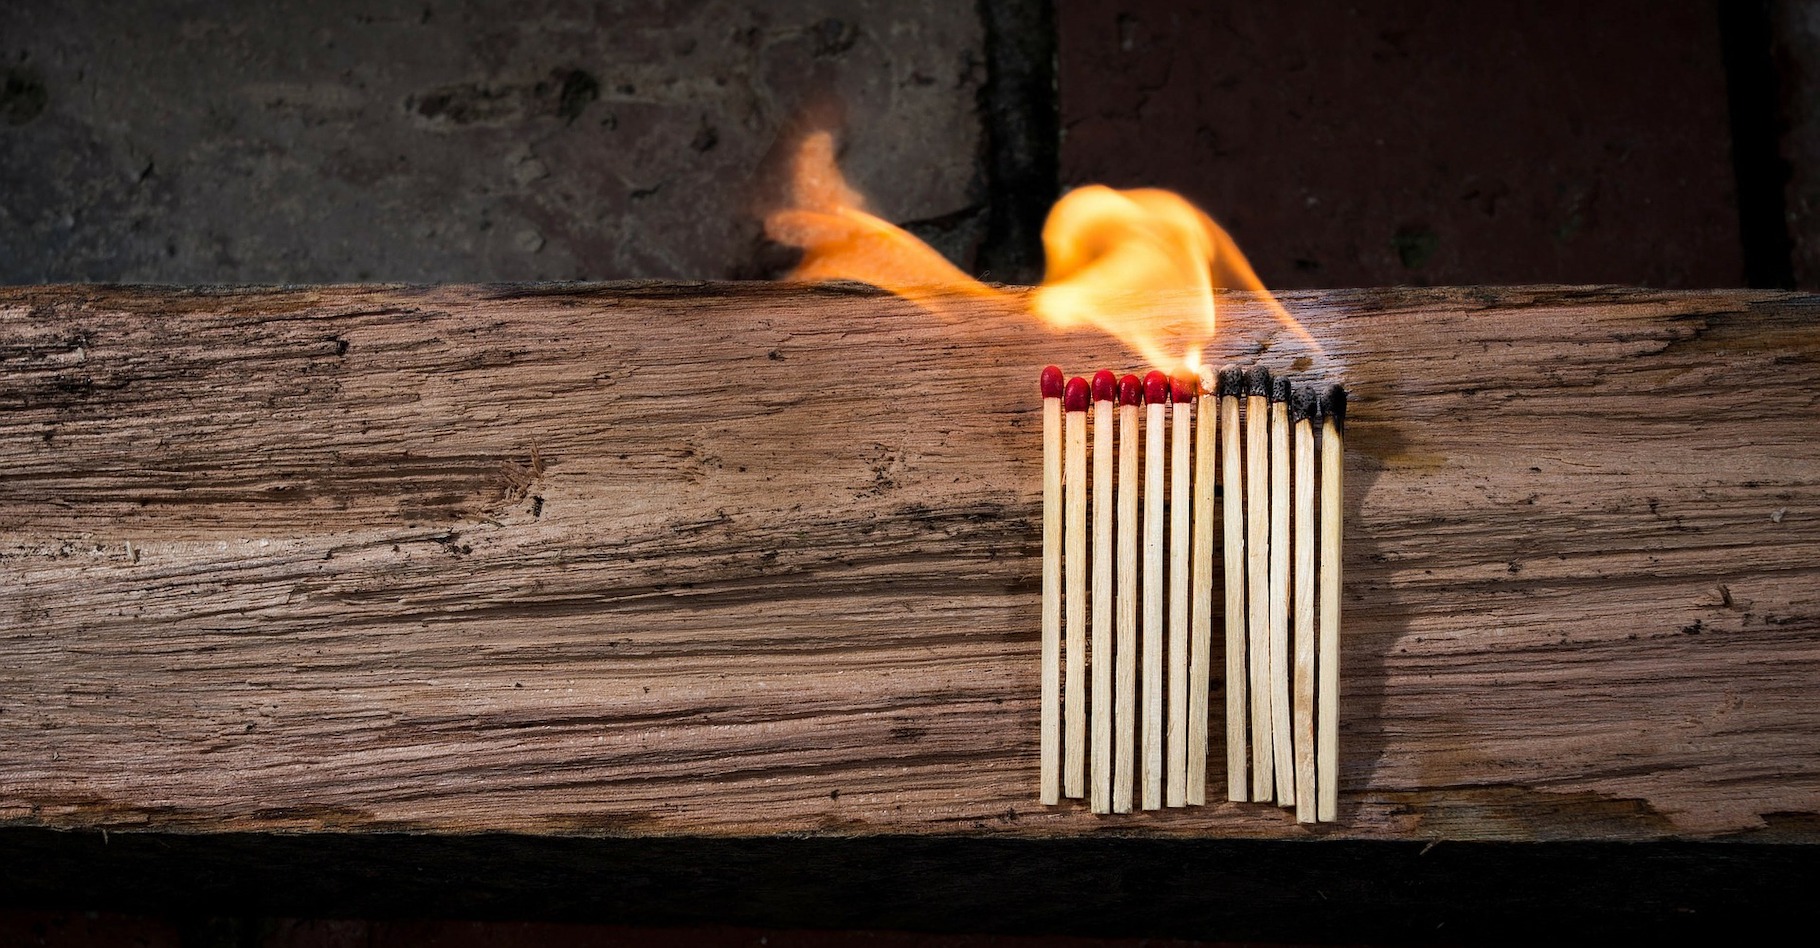 En frottant énergiquement un morceau de bois contre un autre, on peut obtenir du feu. Mais c’est bien plus simple avec l’aide d’une allumette. © raedon, Pixabay License